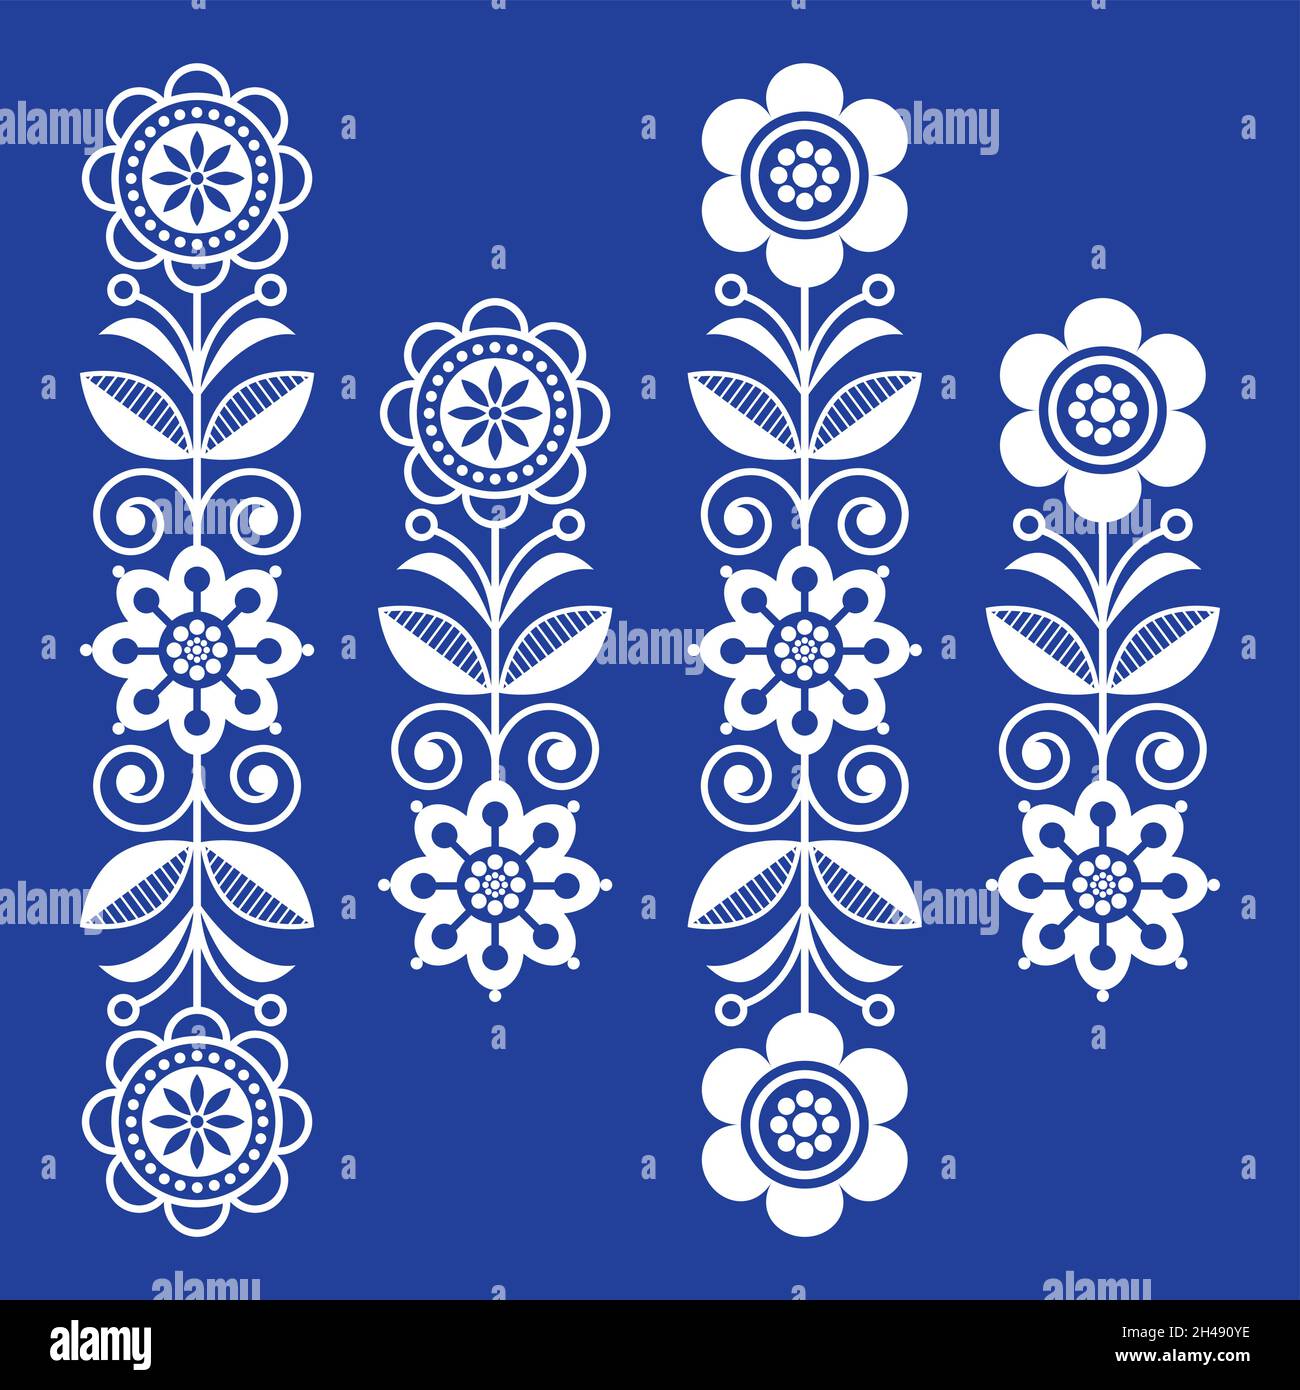 Skandinavische florale Designelemente, Volkskunstmuster - weiße lange Streifen auf marineblau Stock Vektor